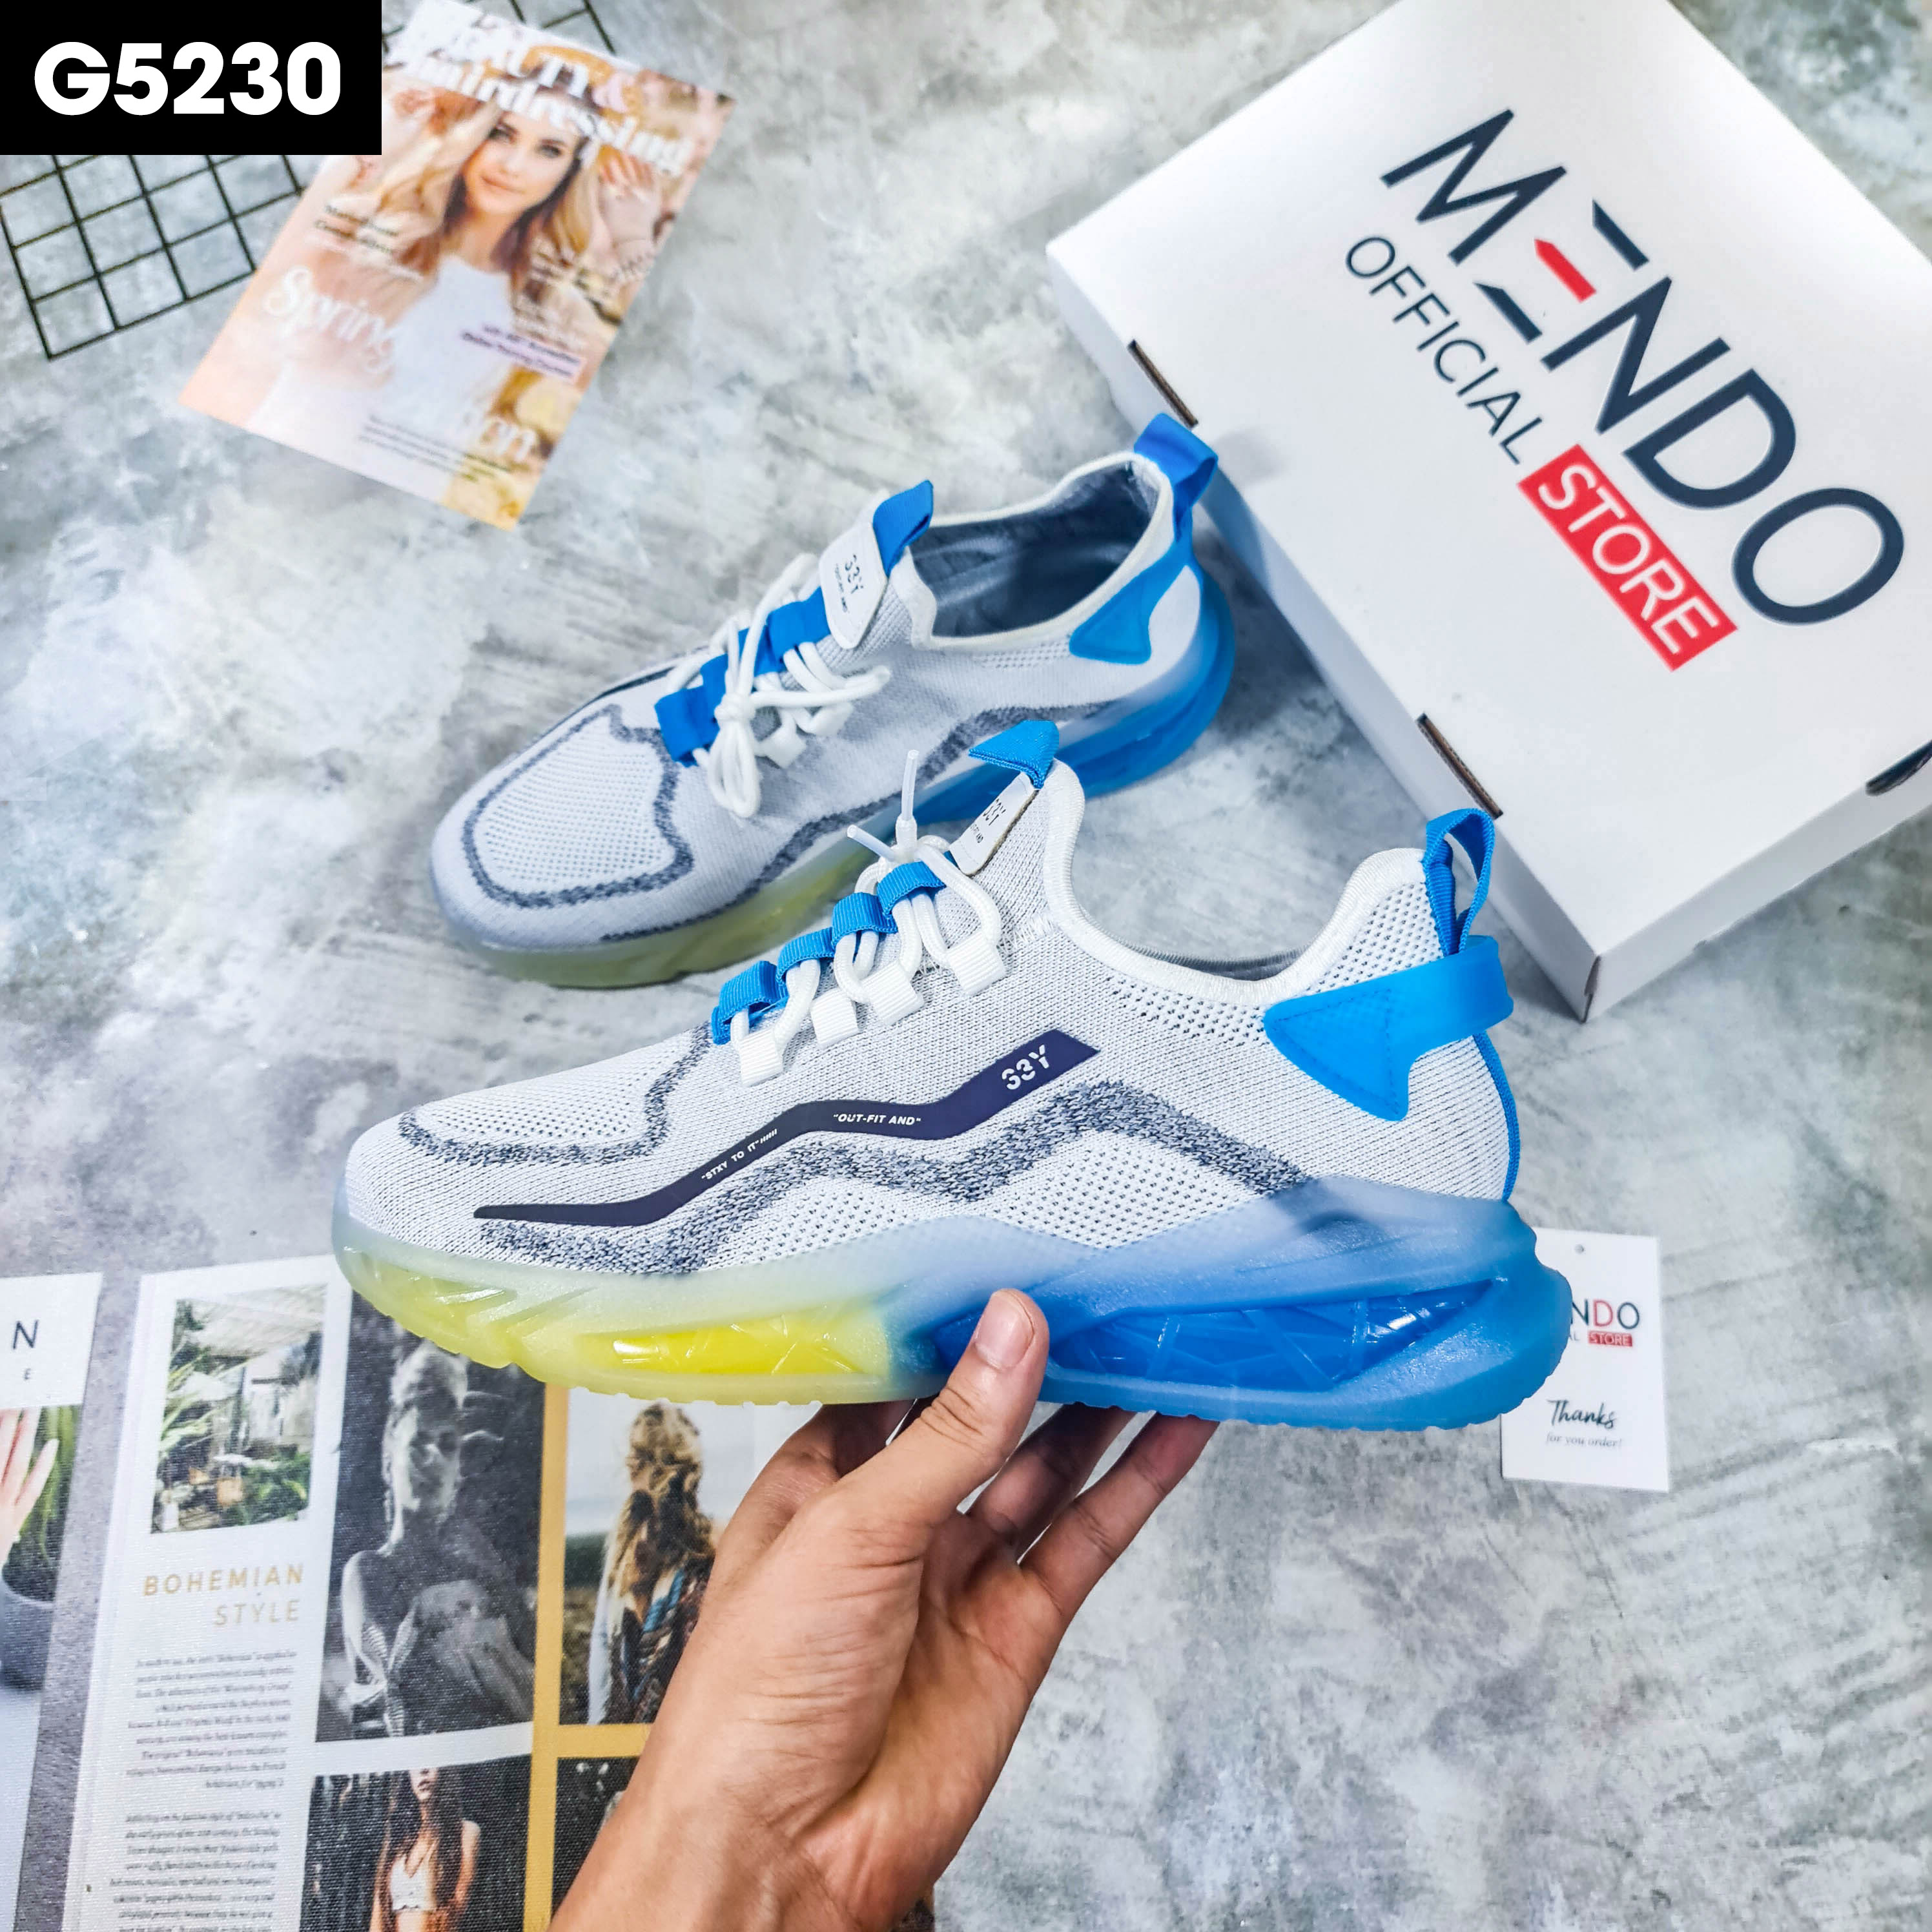 Giày Thể Thao Nam MENDO - Giày Sneaker Màu Trắng - Đen - Kaki, Dáng Thể Thao Dễ Phối Đồ - G5230